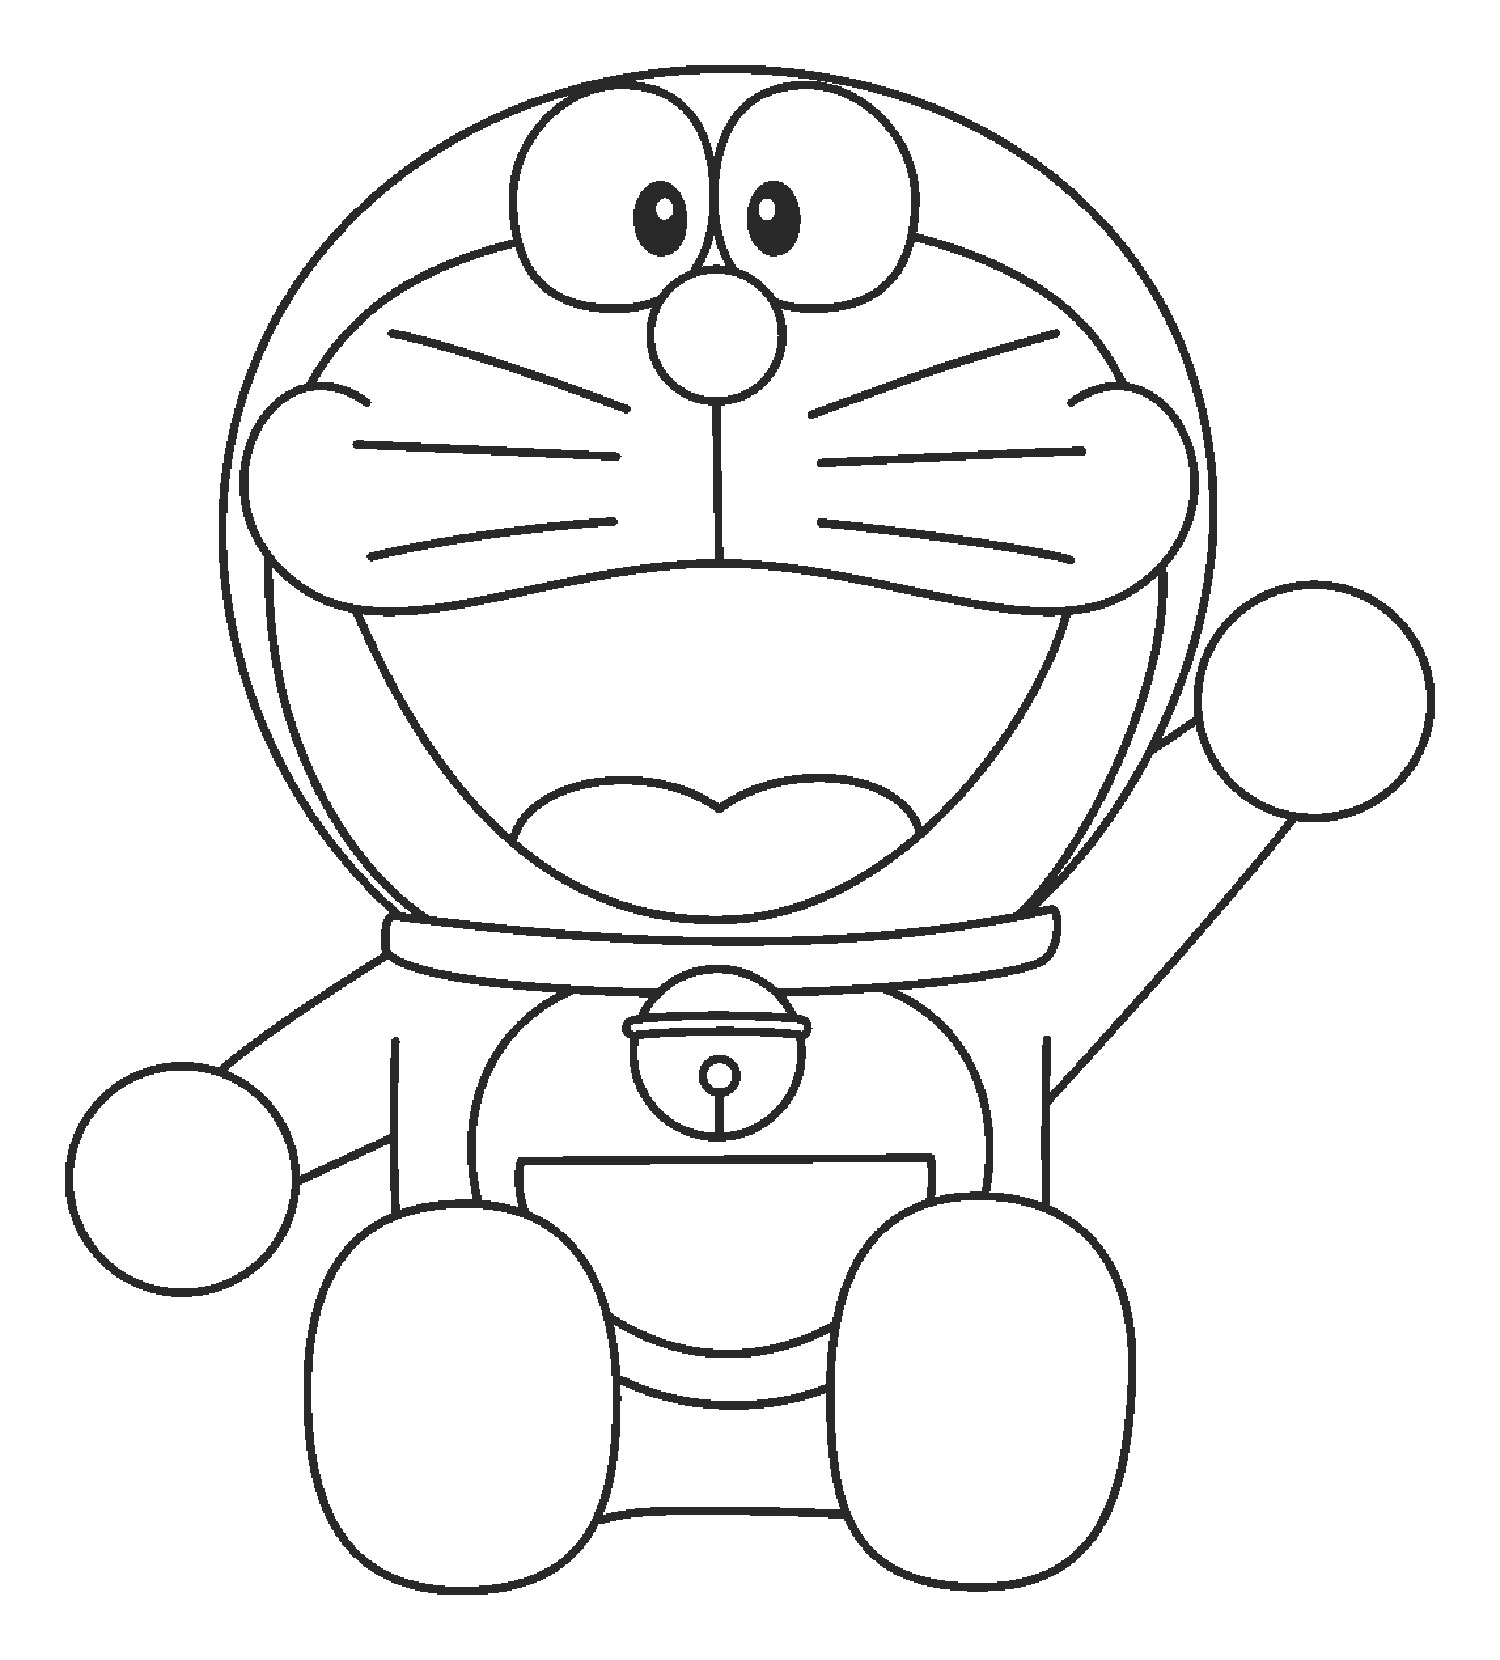 Vẽ Doraemon so cute draw doraemonvẽ nhân vật truyện tranhhoạt hình Ngọc  NguyễnTV  YouTube